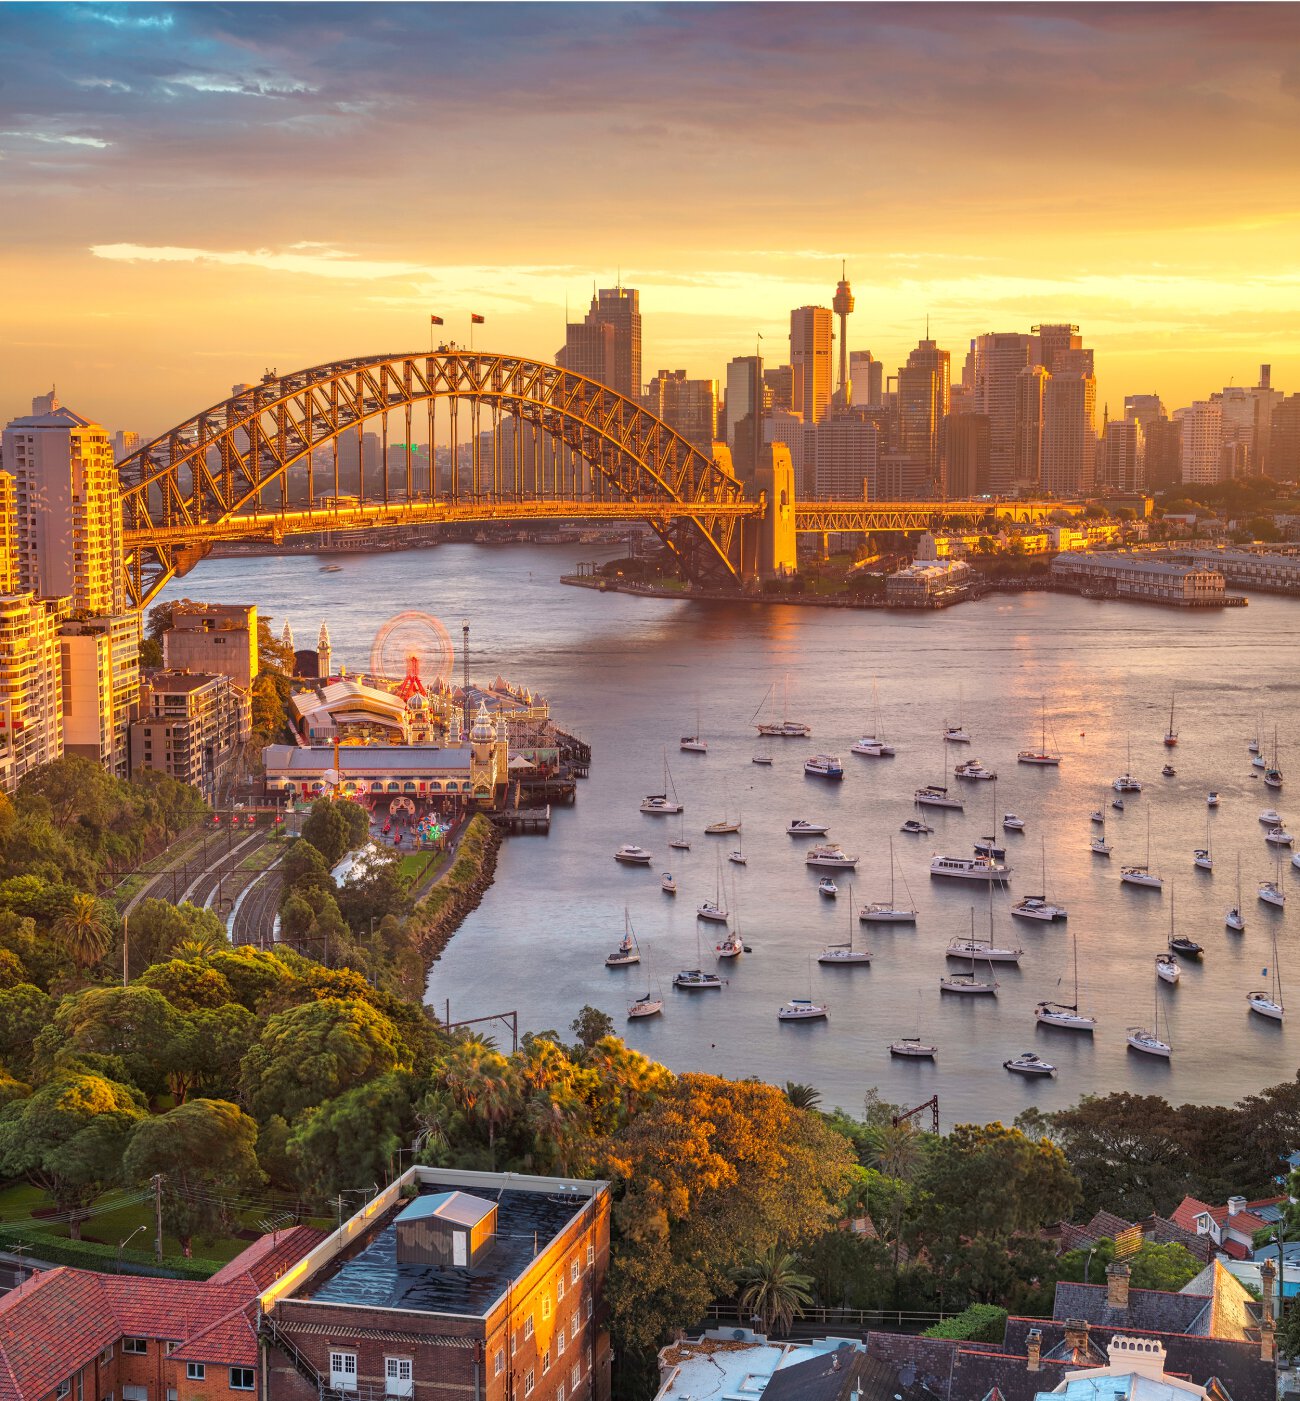 Sydney Australia view